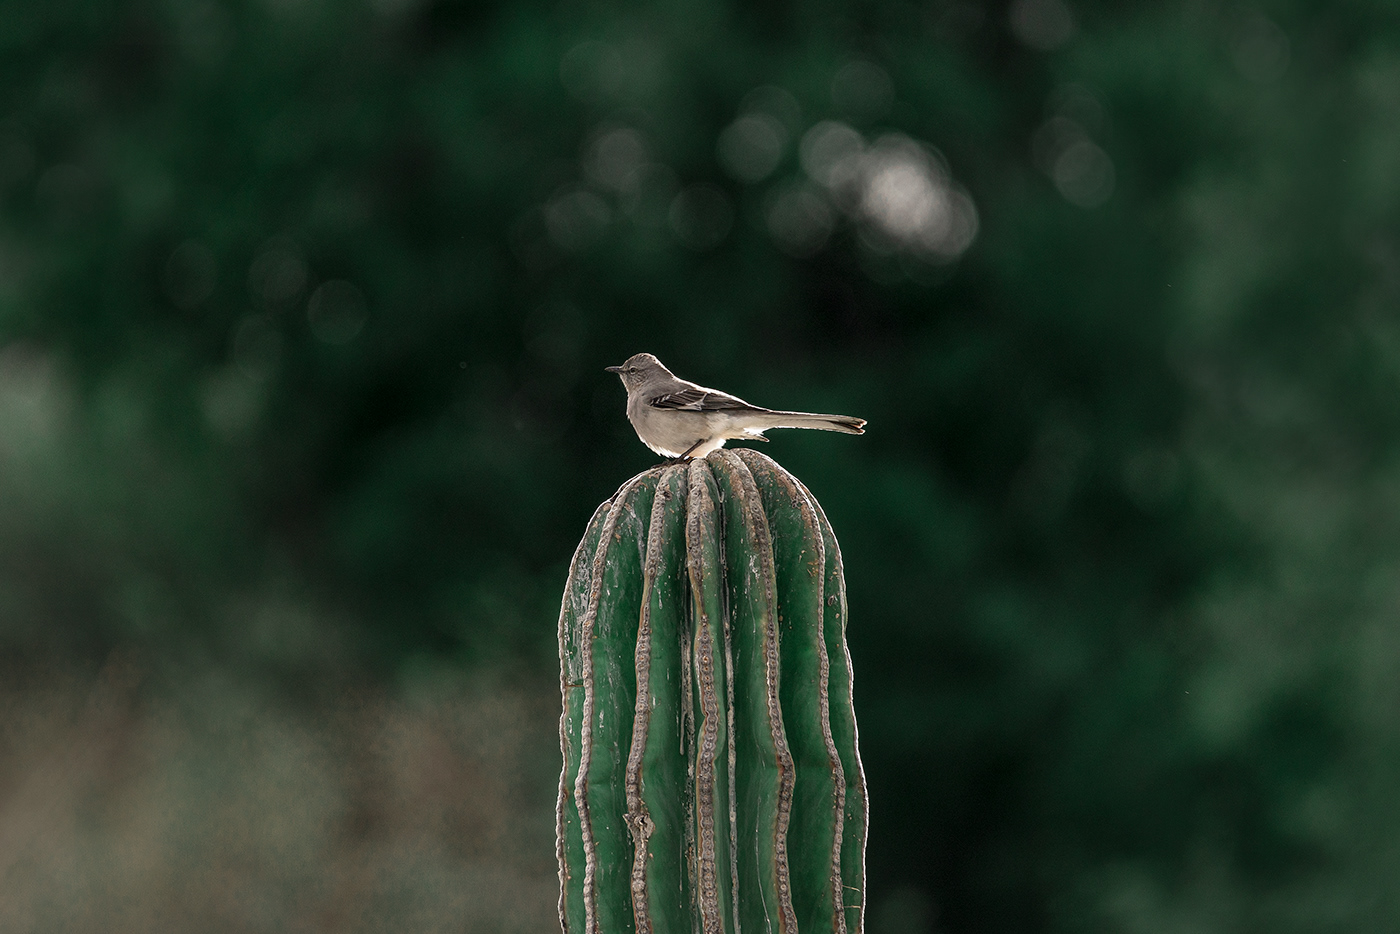 aves baja california sur birds birds photography mexico Nature Travel